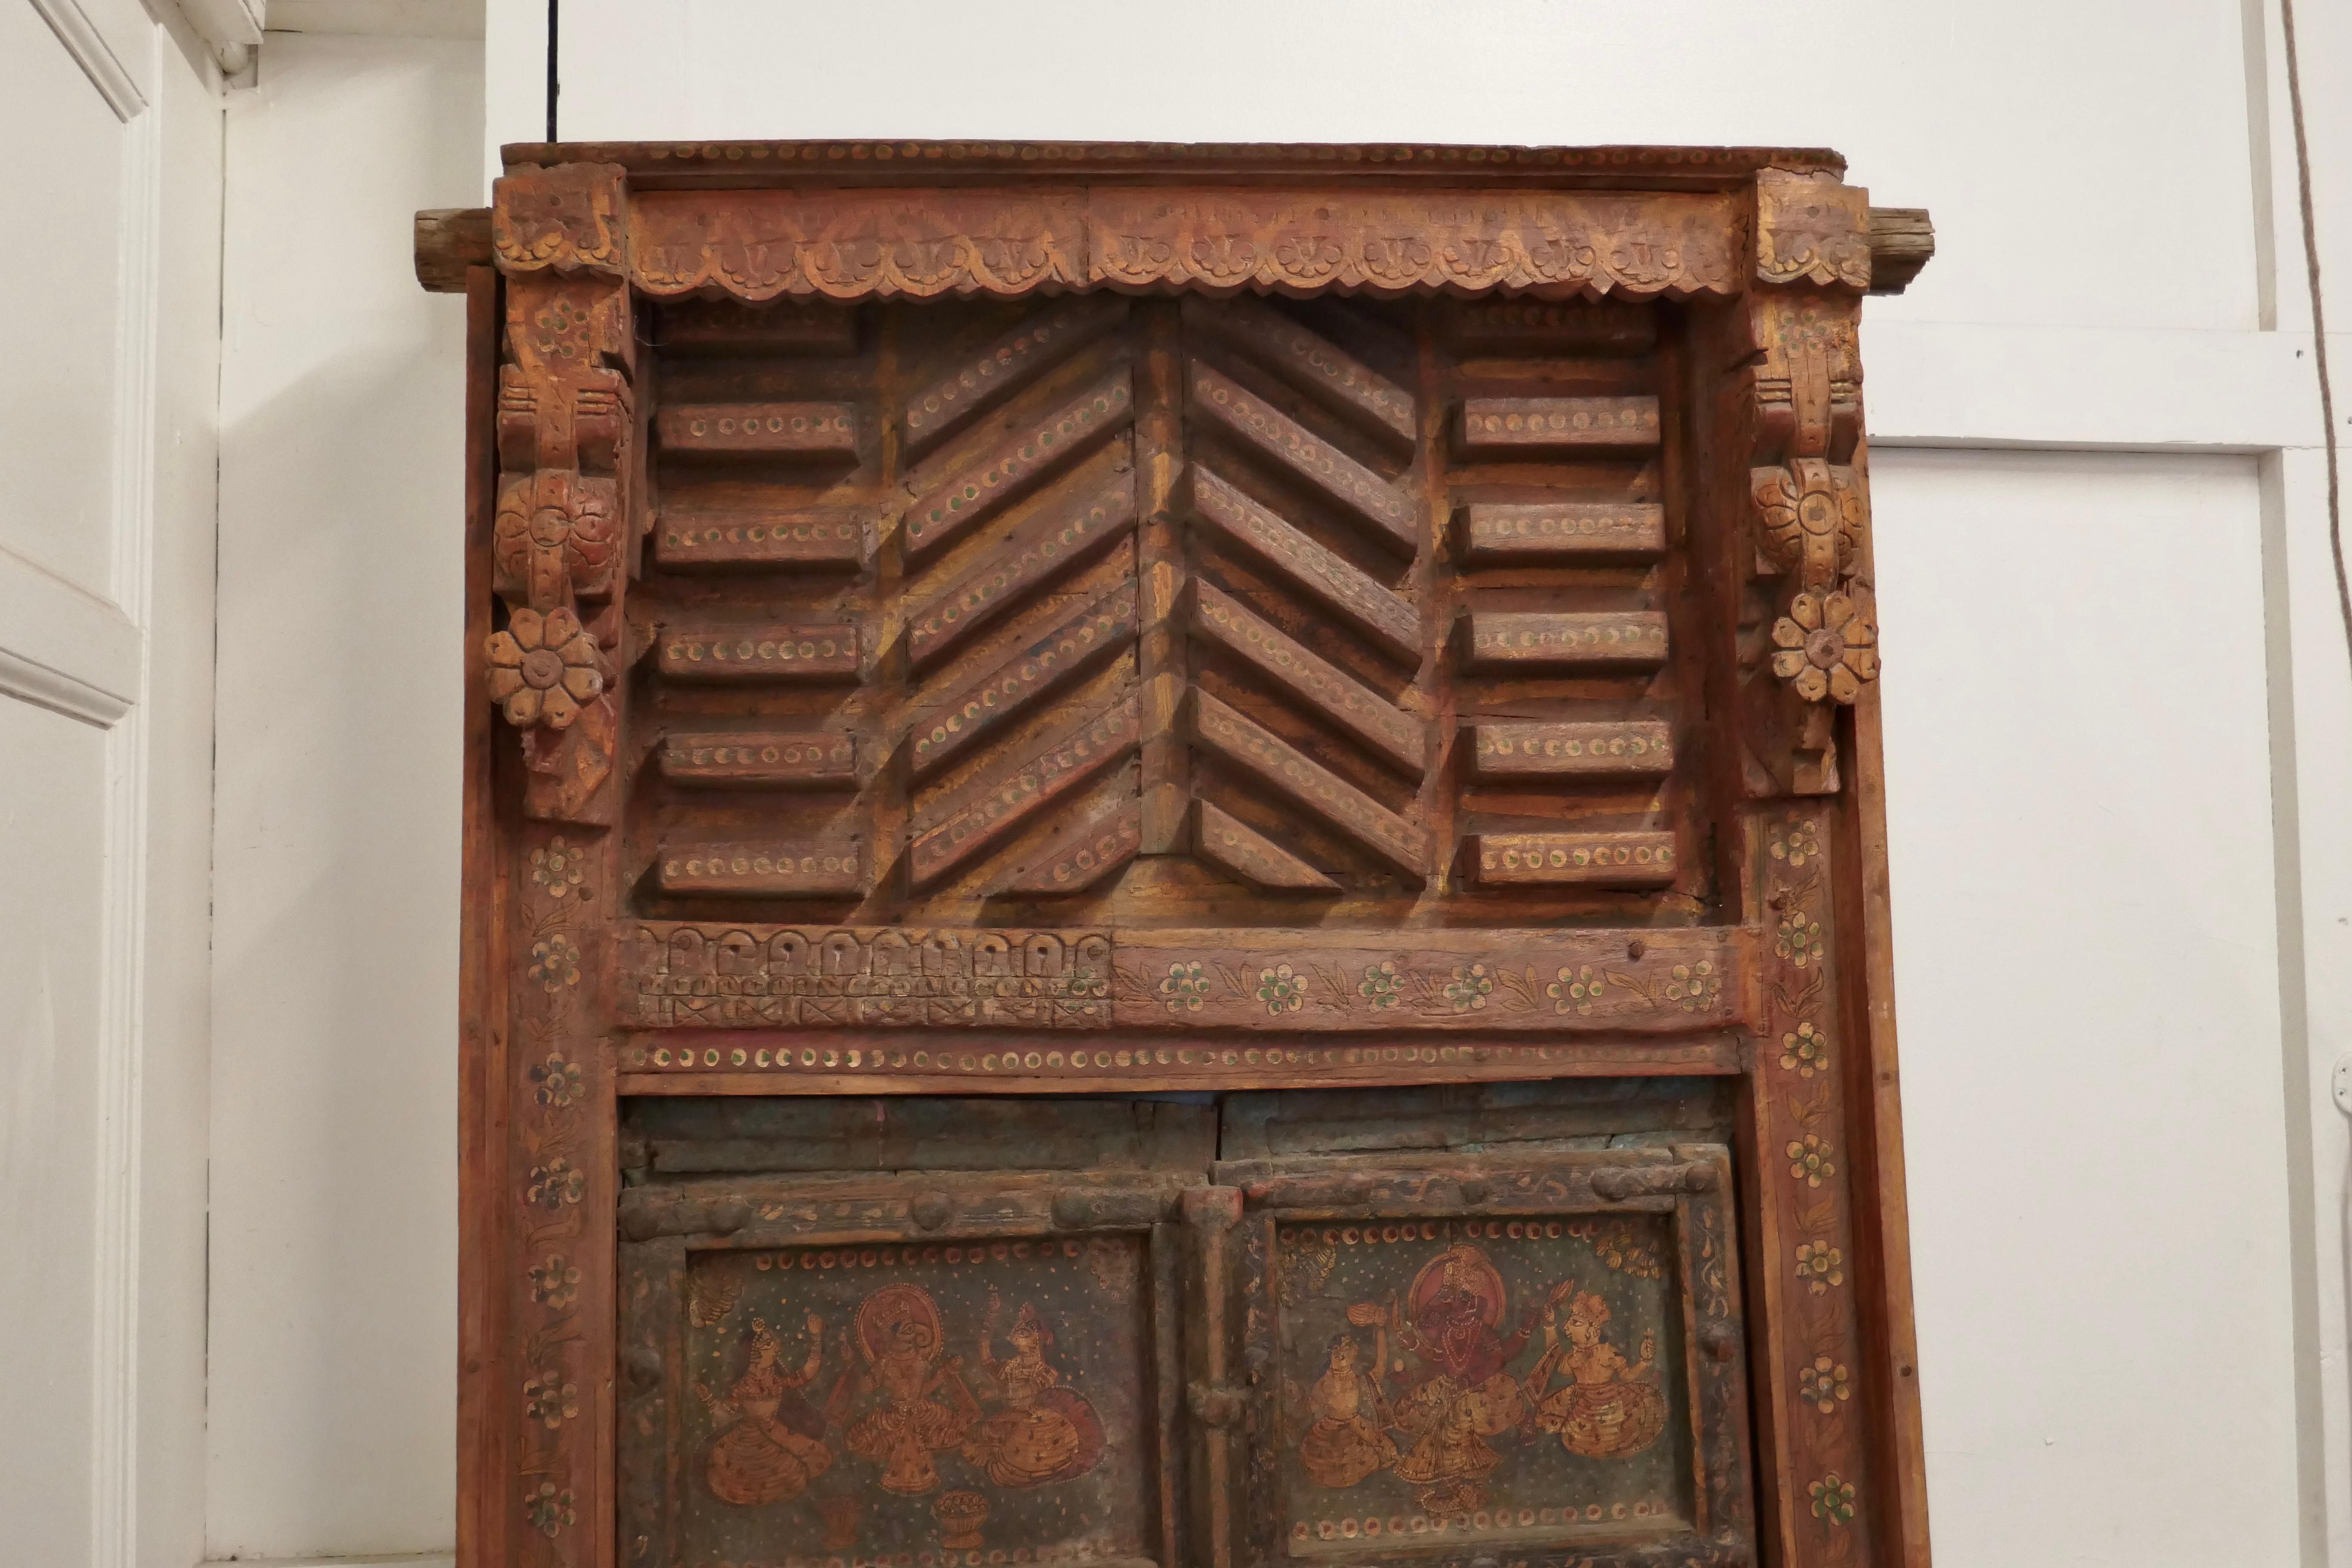 Portes anglo-indiennes peintes dans leur cadre d'origine, Art mural

Ces magnifiques portes en bois seraient fabuleuses sur un mur en guise de décoration ou déplacées dans une entrée.
Les portes à panneaux se trouvent dans leur cadre sculpté